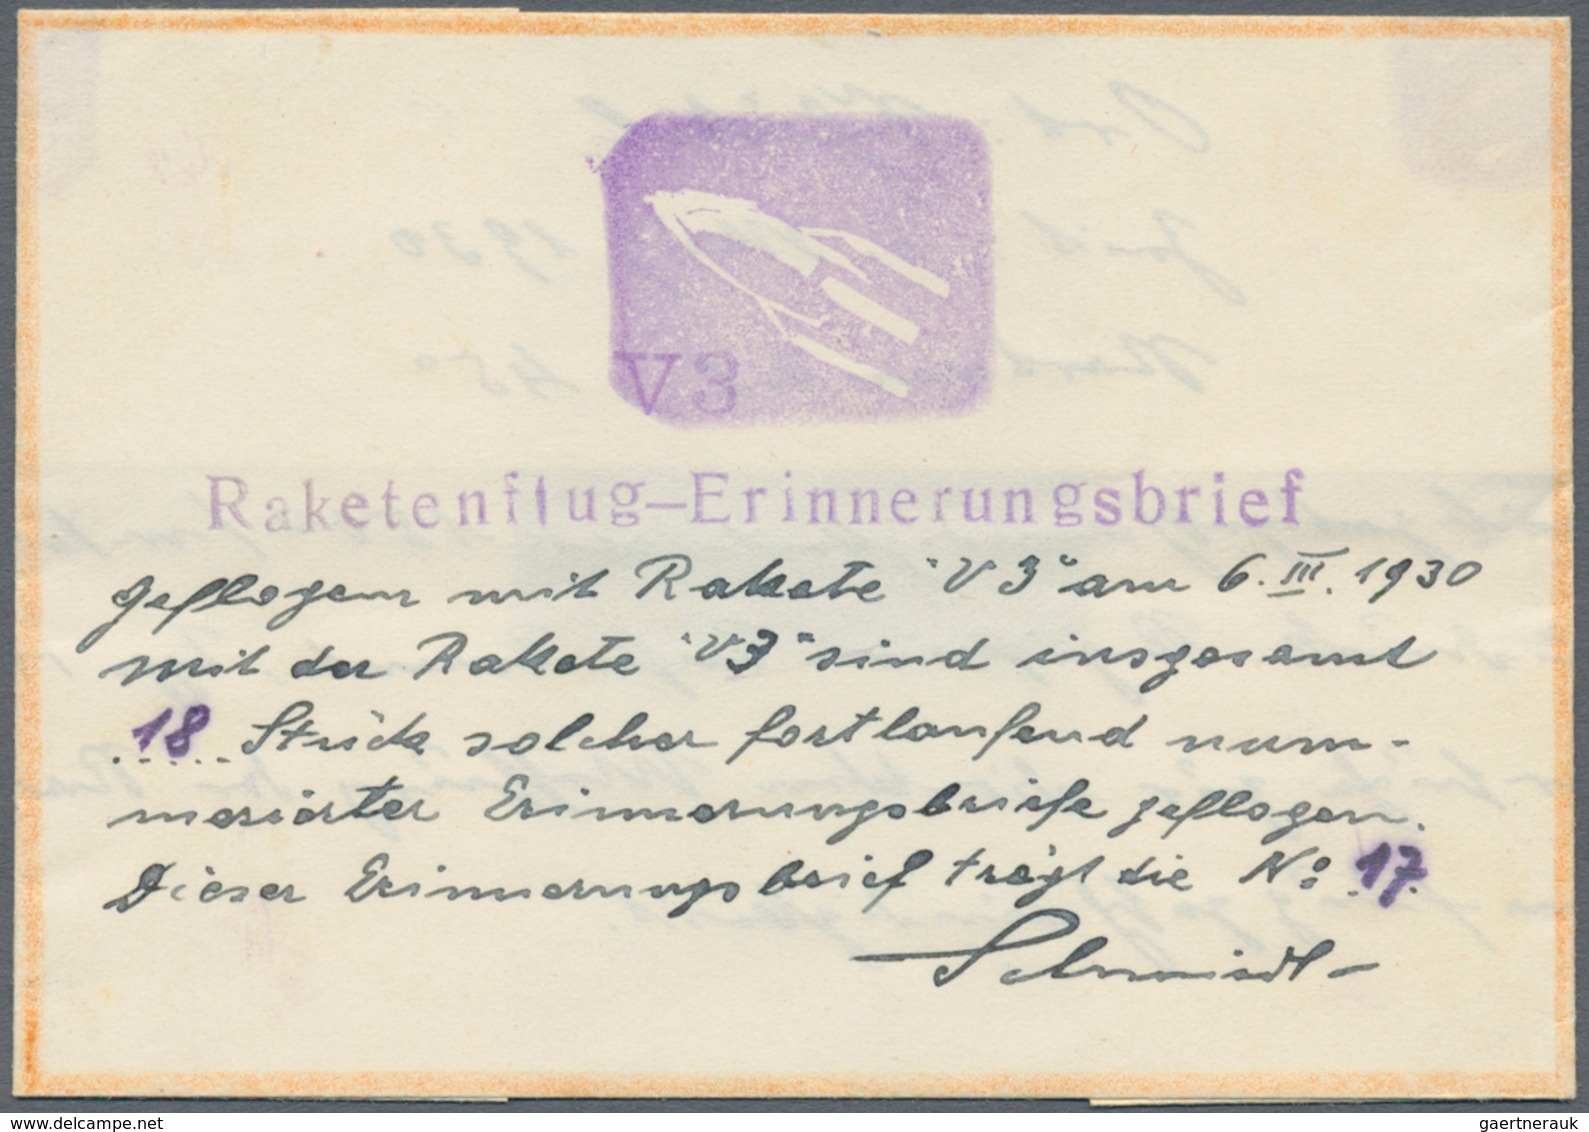 Raketenpost: Friedrich Schmiedl Friedrich Schmiedl was born on 14.05.1902 in Schwertberg in Upper Au